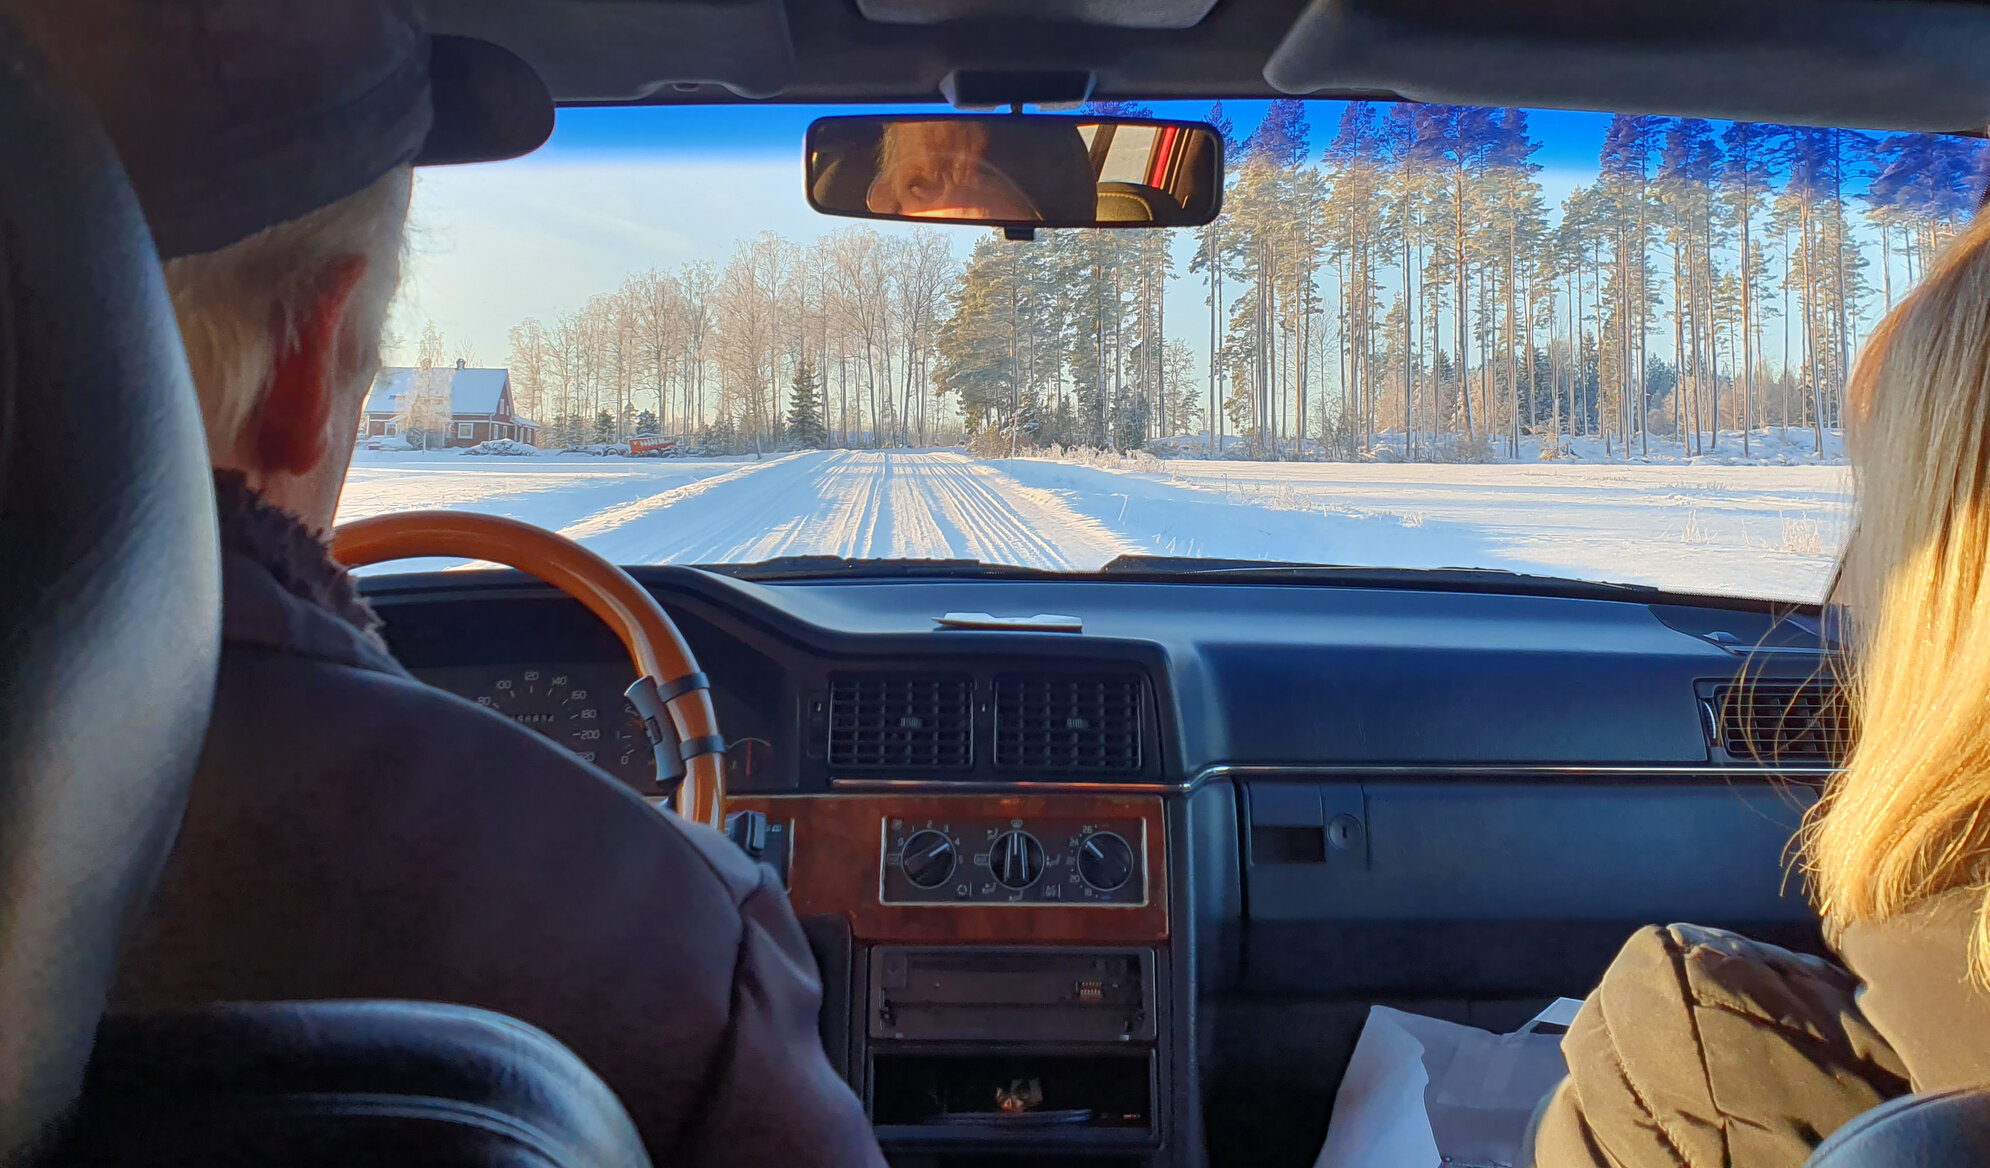 Plogad väg i snöigt landskap sedd inifrån bilen